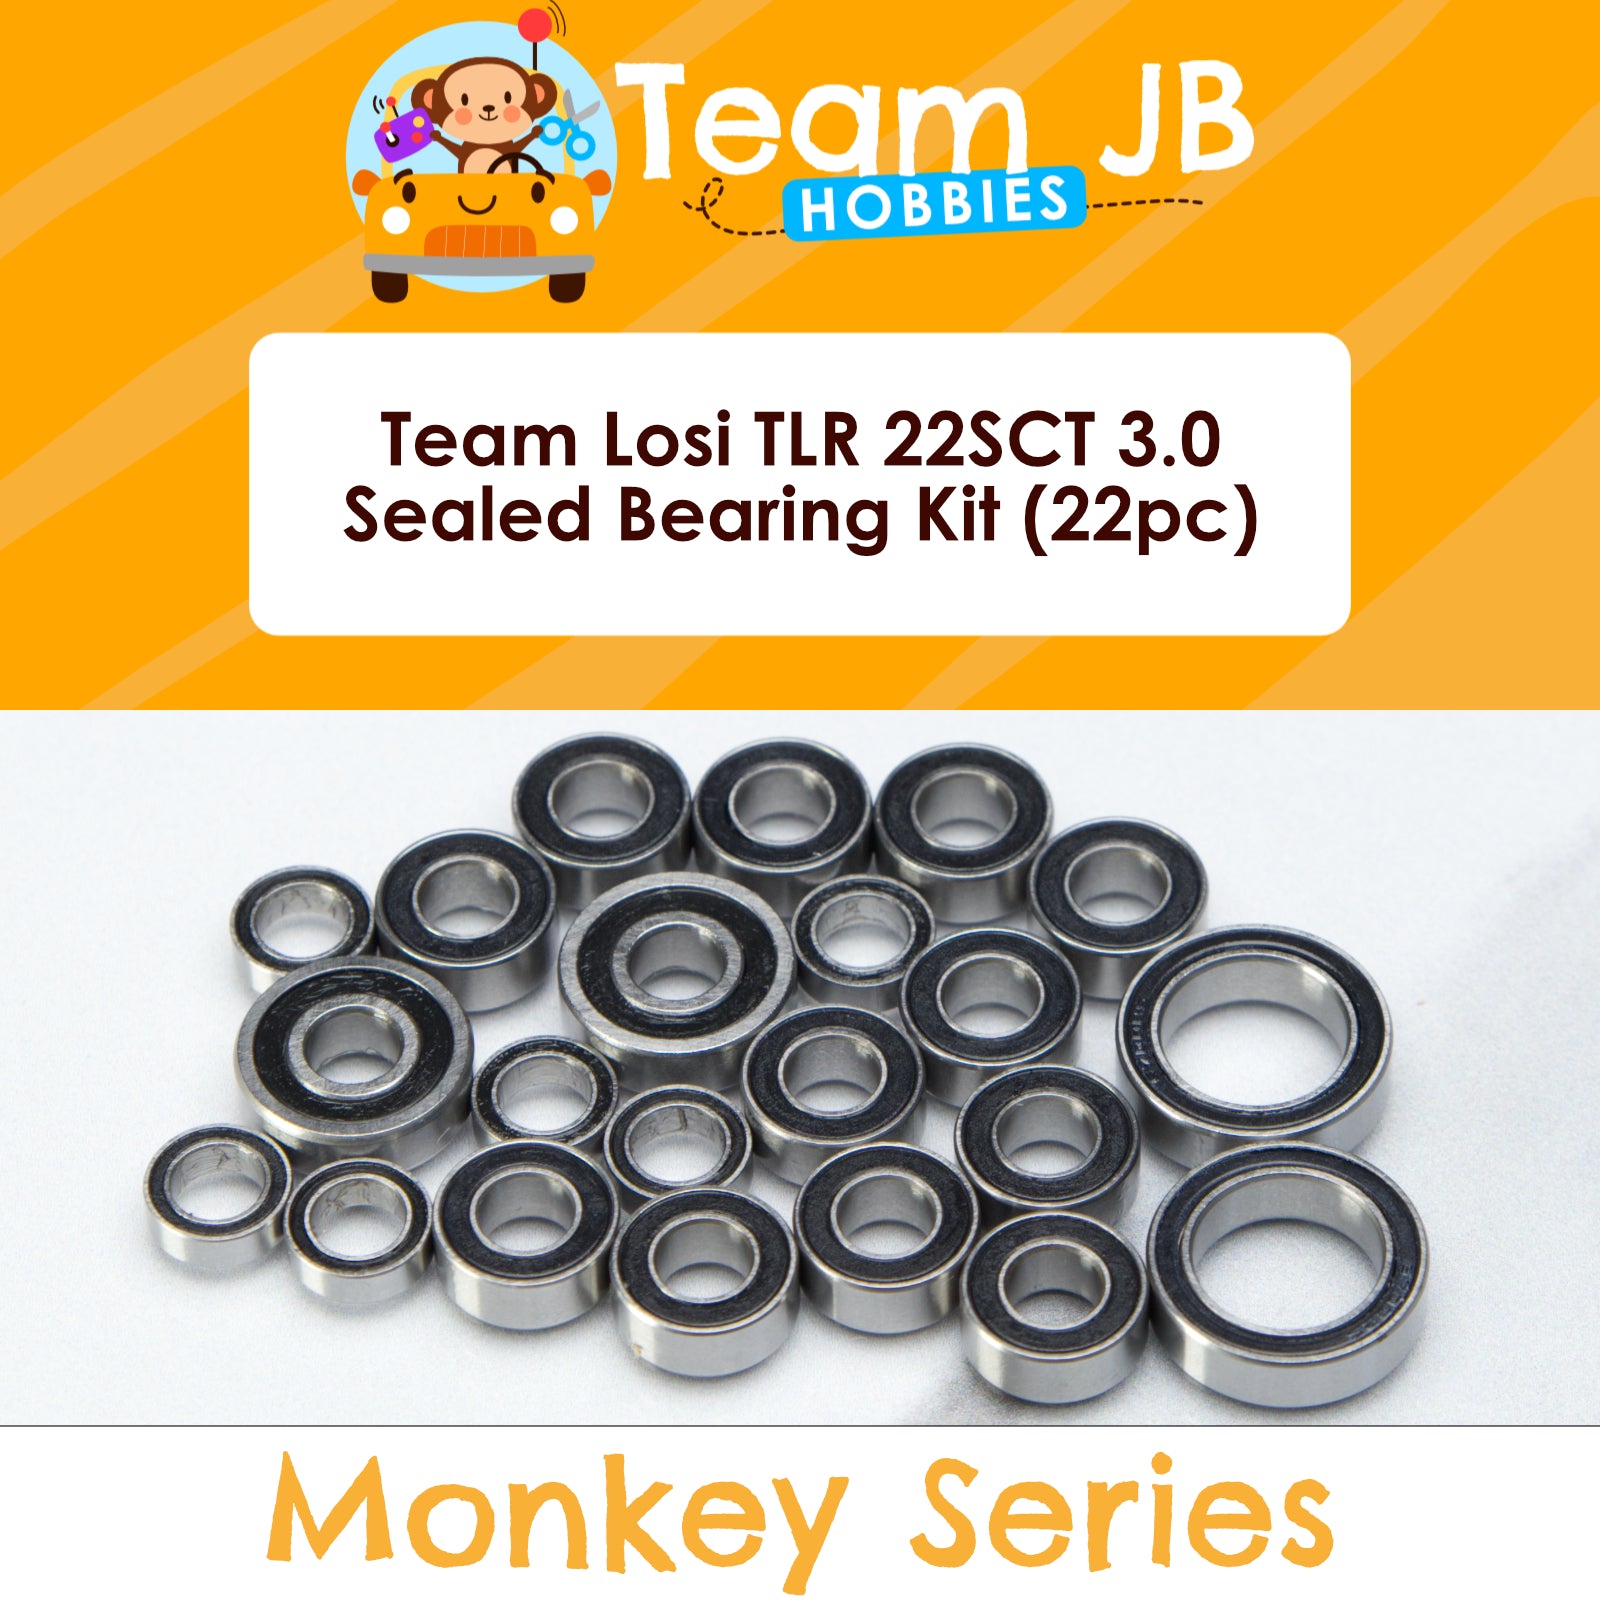 Team Losi TLR 22SCT 3.0 - Sealed Bearing Kit